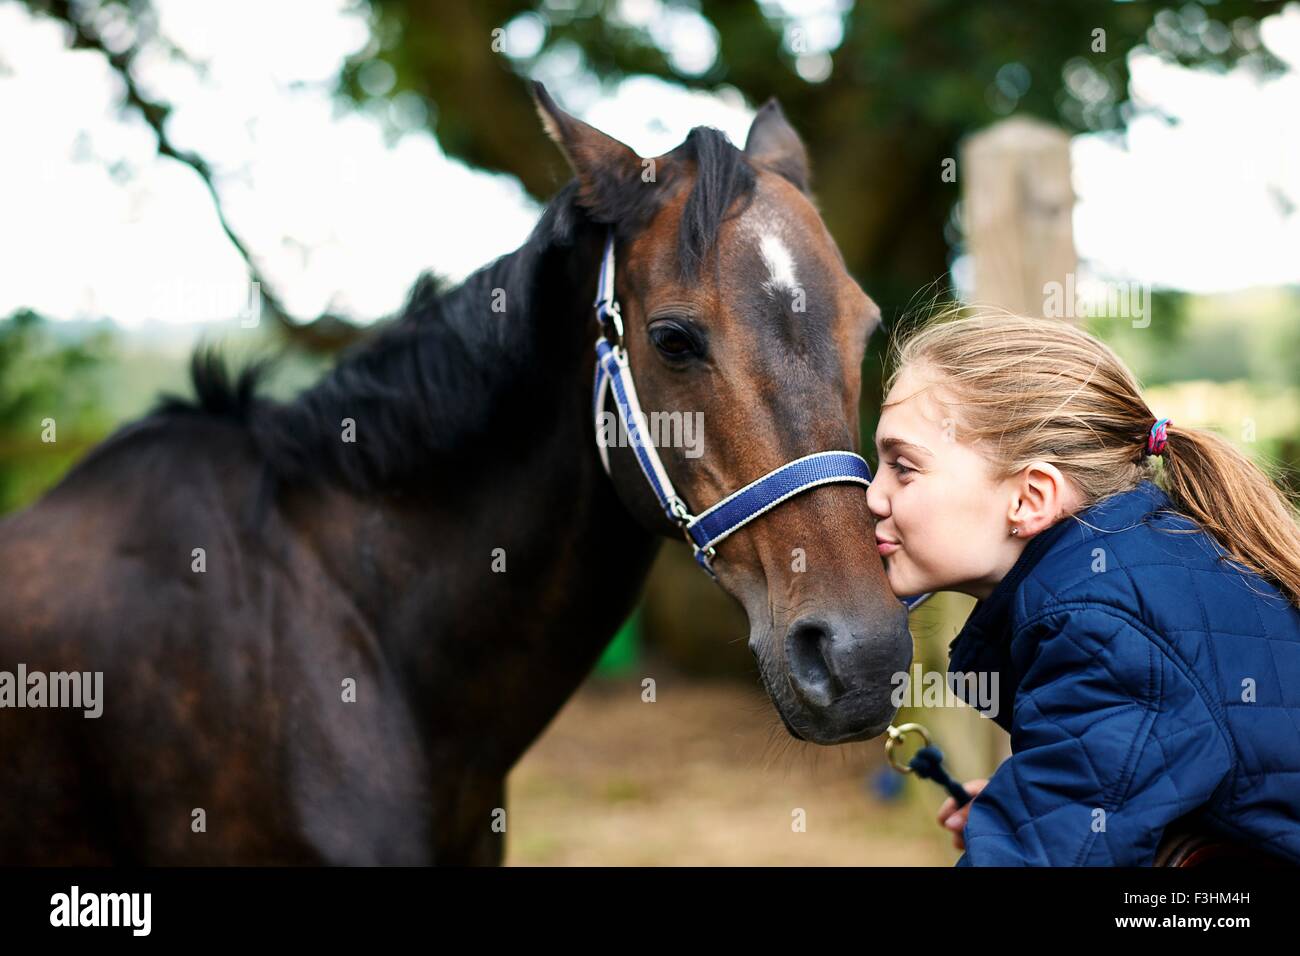 Girl horseback rider kissing horse Stock Photo